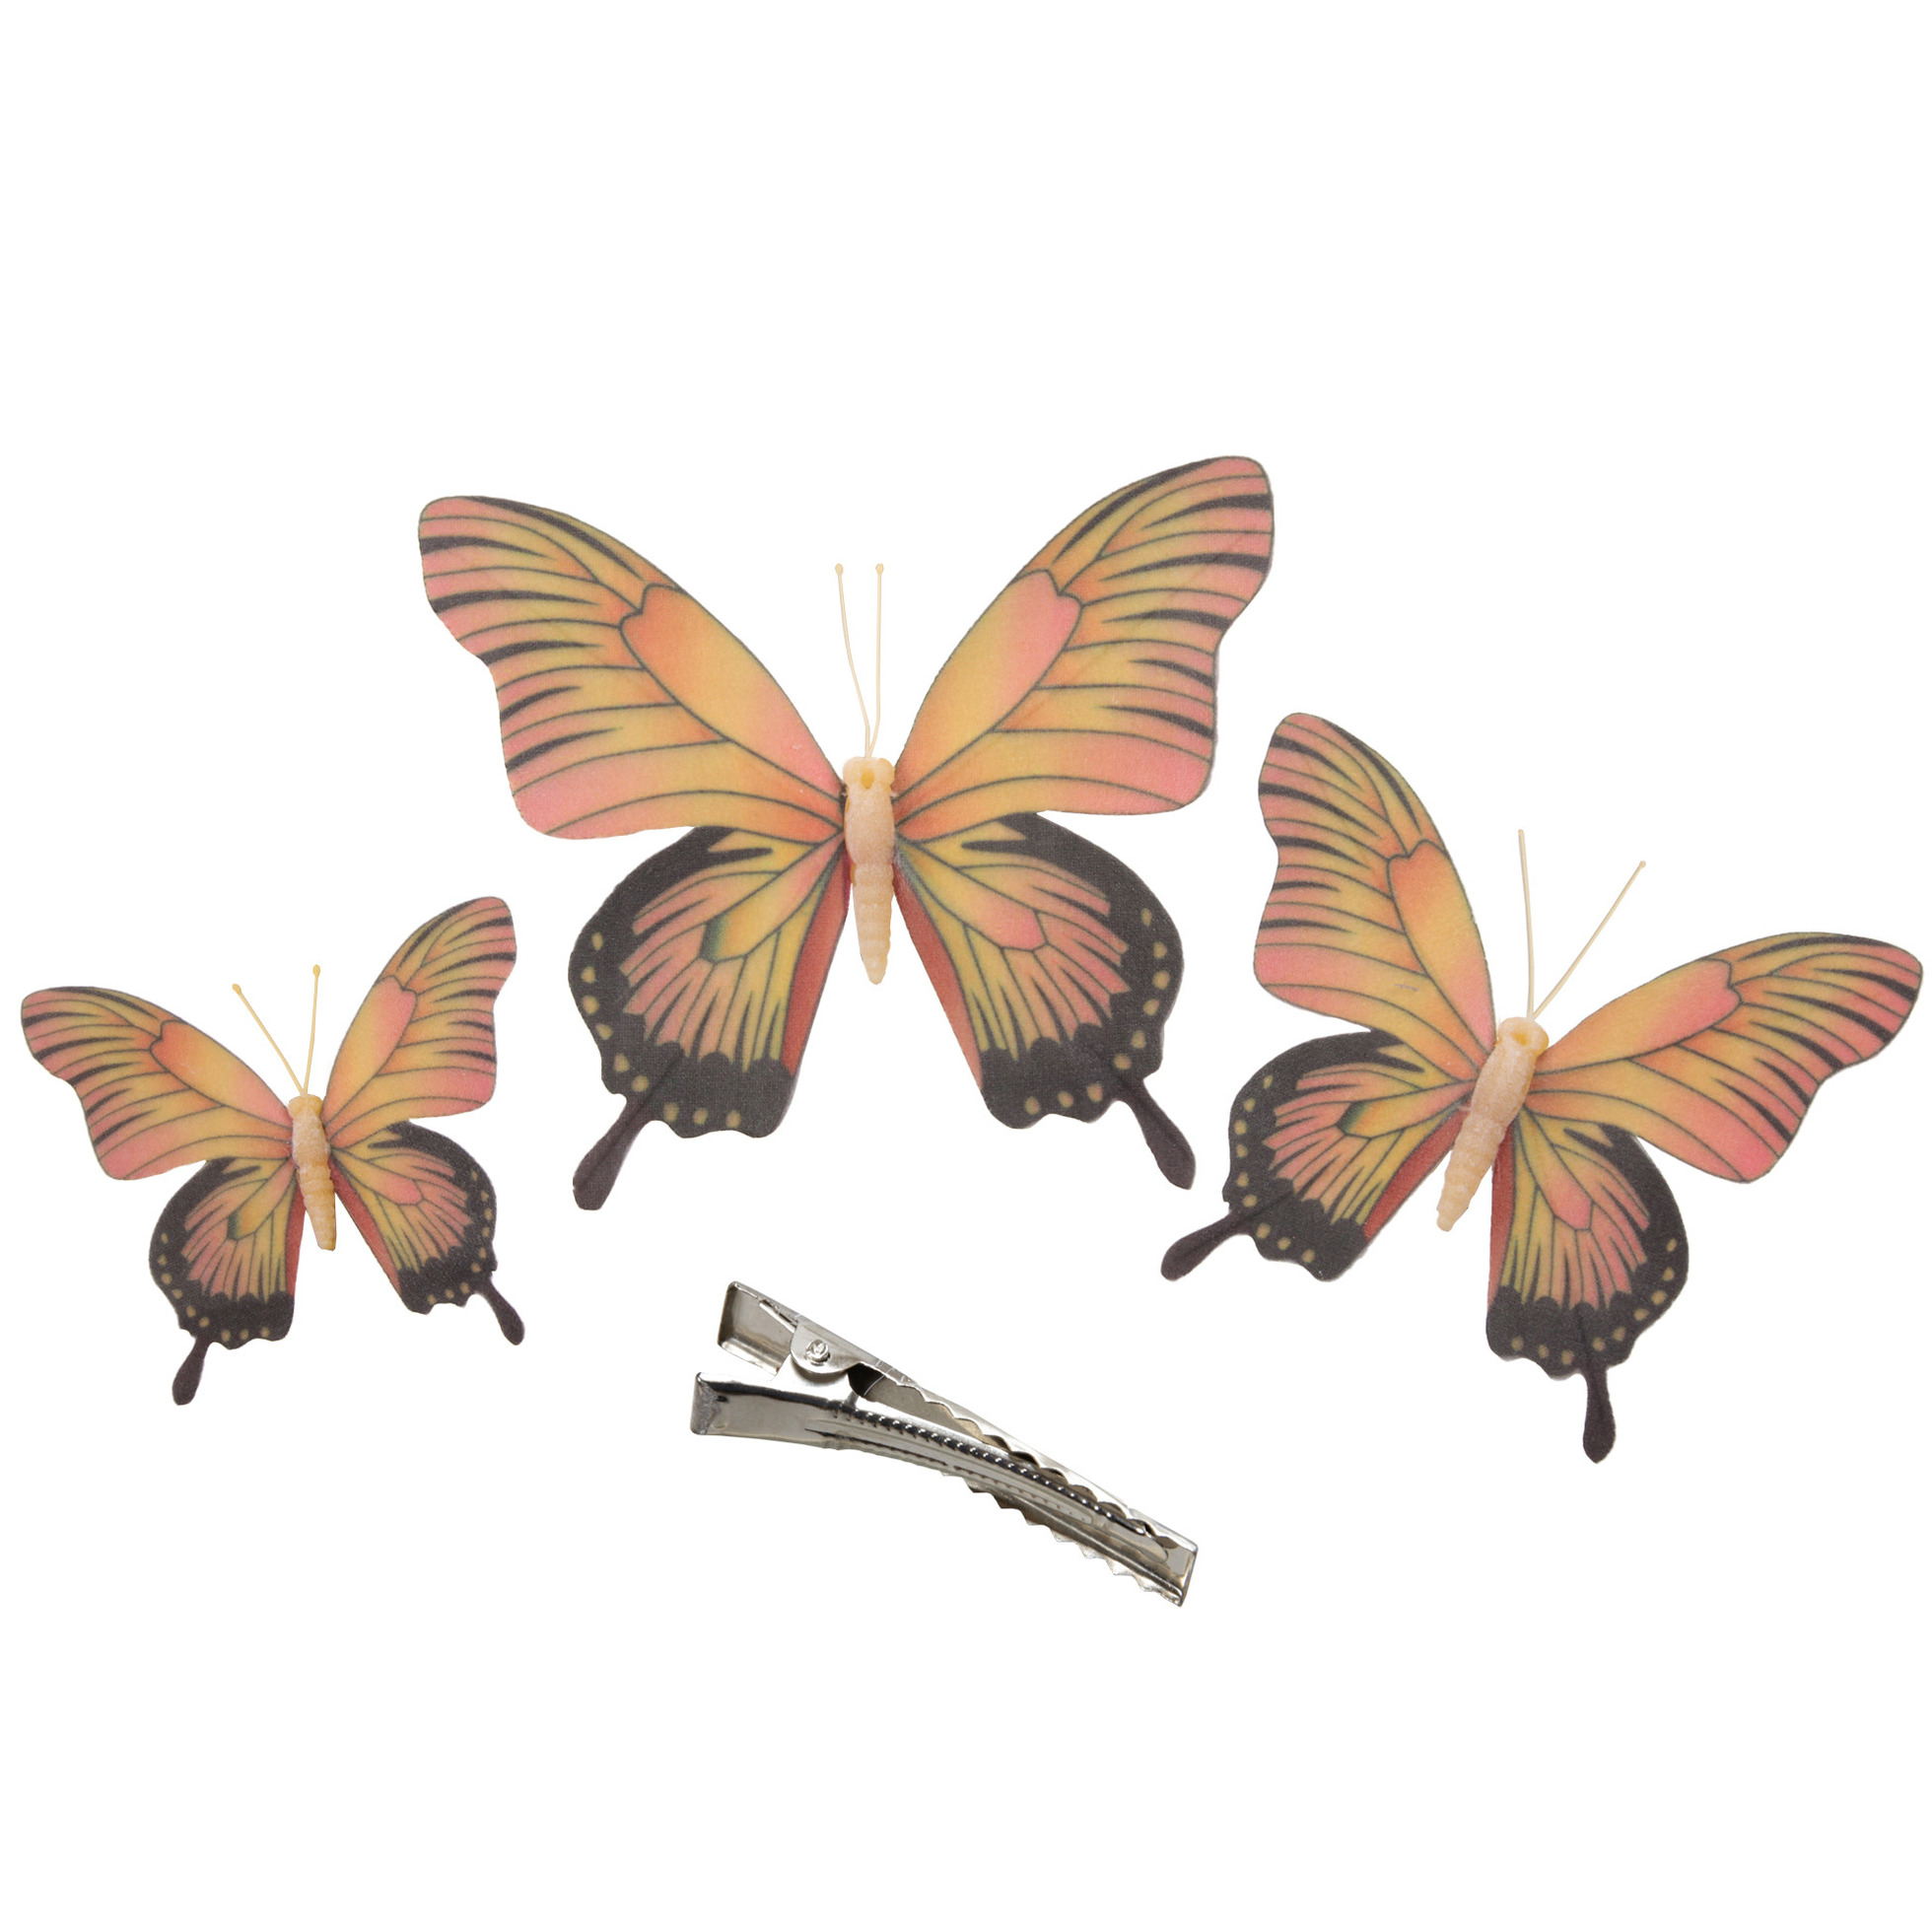 3x stuks decoratie vlinders op clip geel-roze 3 formaten 12-16-20 cm